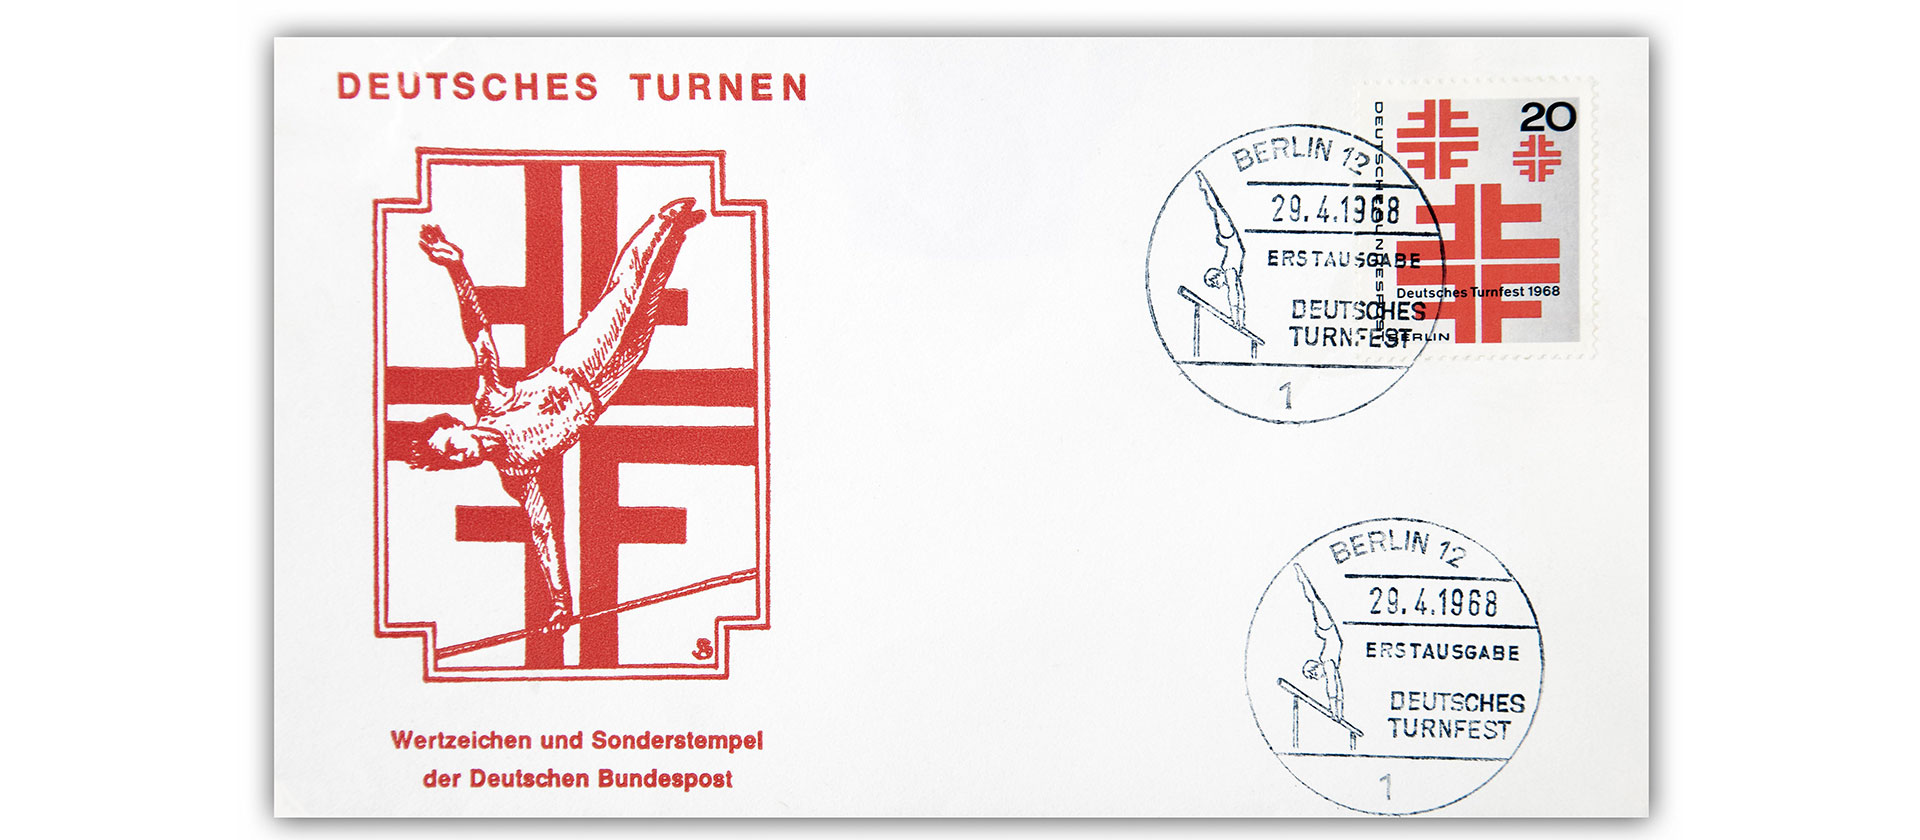 Sonderstempel Turnfest Berlin 1968 | Bildquelle: Picture Alliance